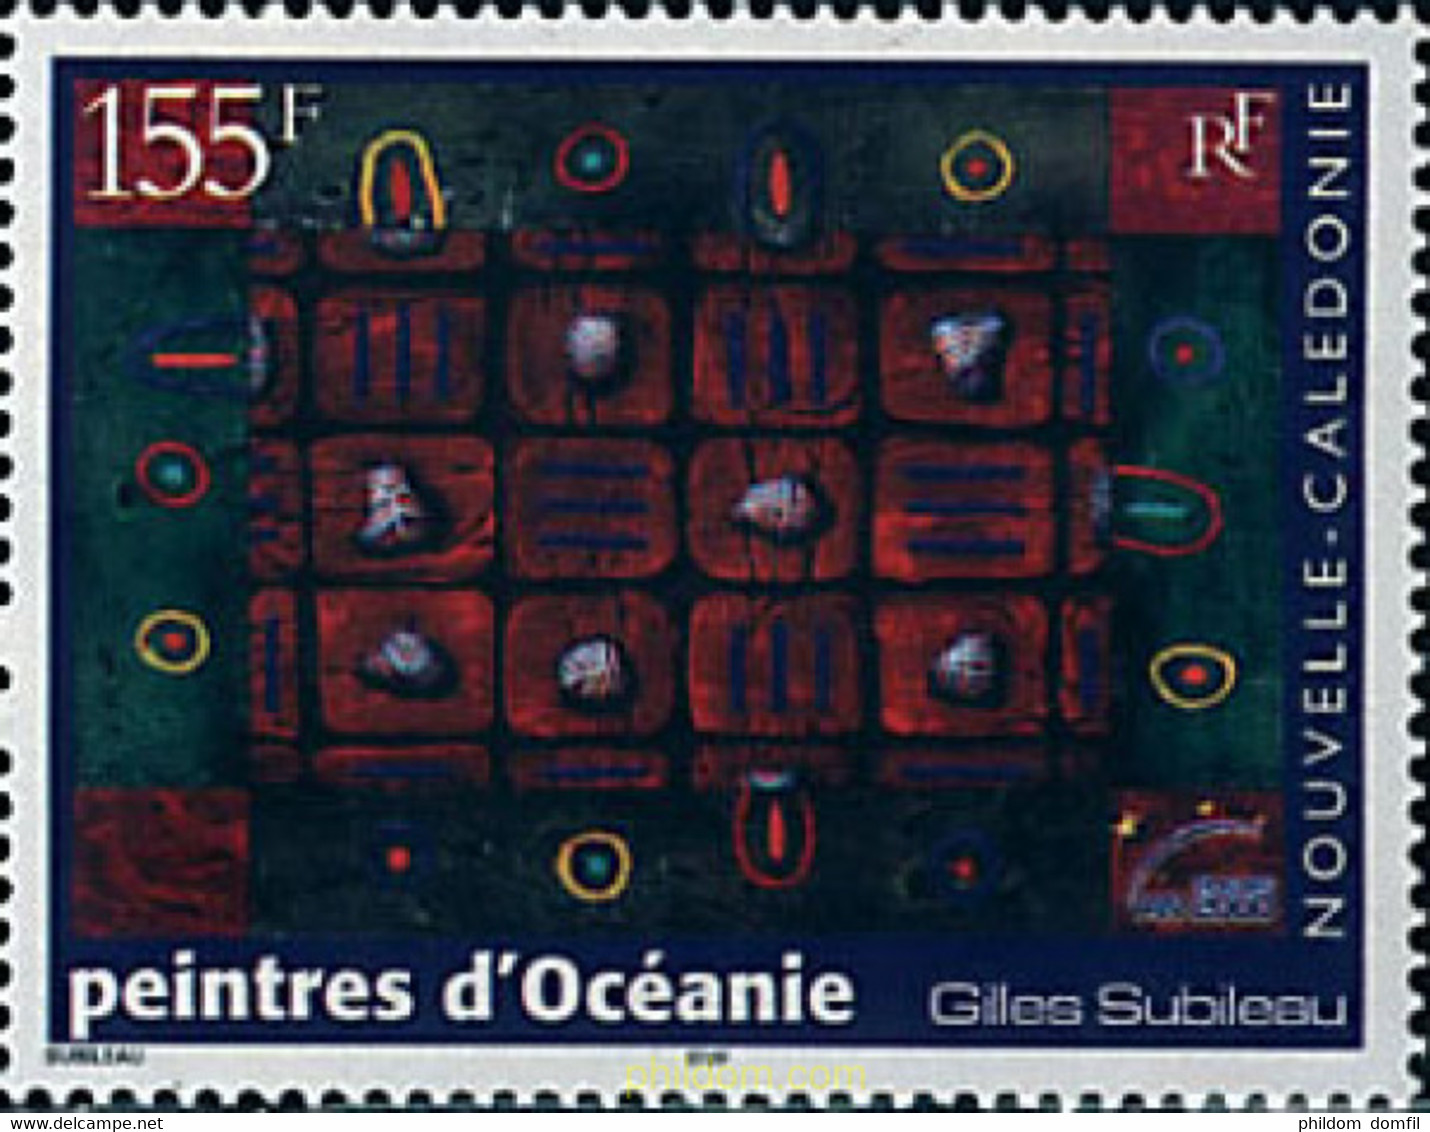 69298 MNH NUEVA CALEDONIA 2000 PINTURA DE OCEANIA - Oblitérés